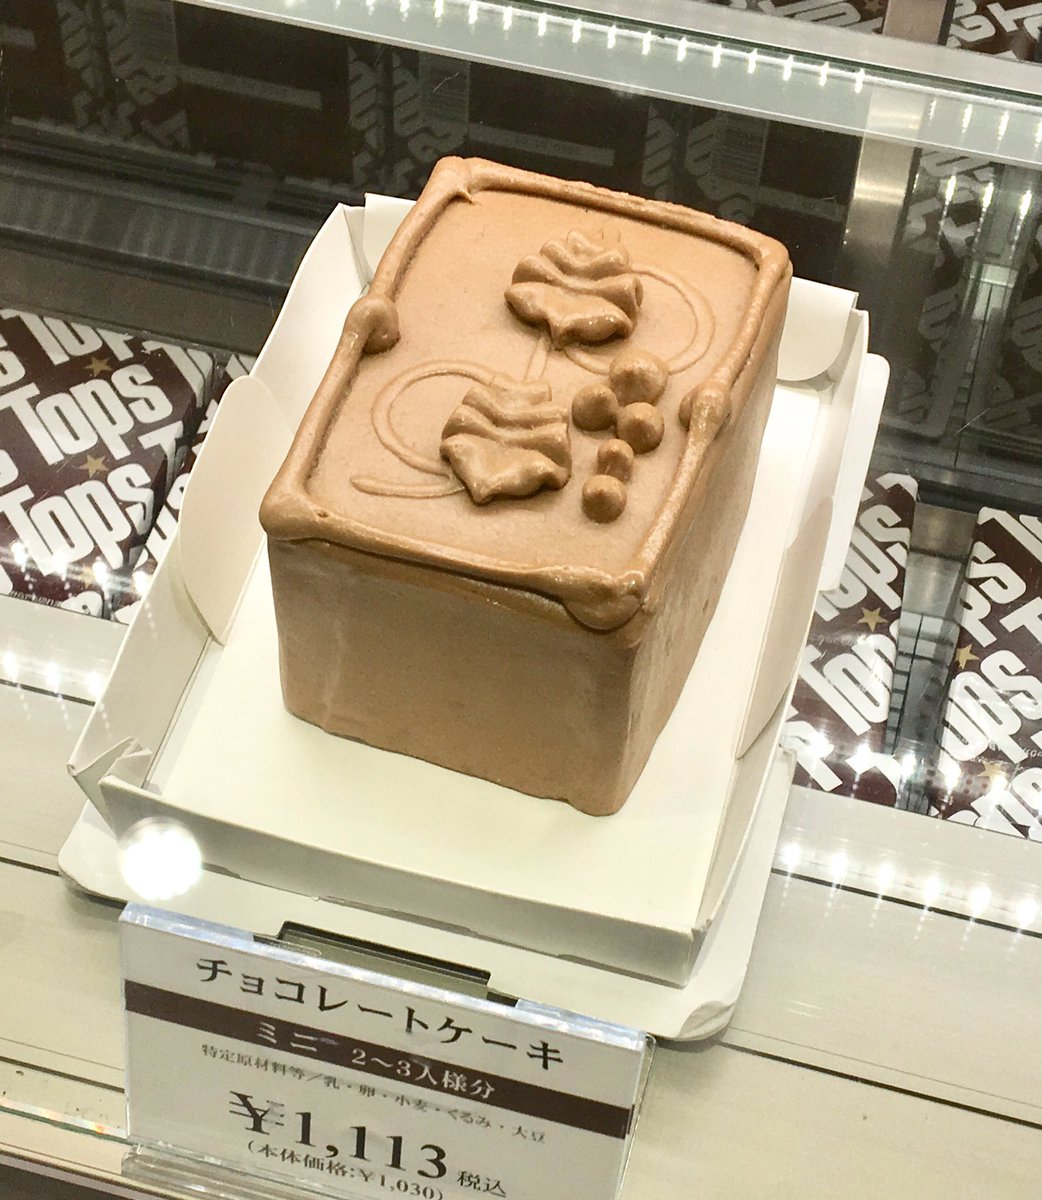 公式 新潟伊勢丹 グルメ催事 今週のスイーツステージは 東京都 トップス チョコレートケーキも チーズケーキも2サイズでご紹介しています 2 18 火 まで 新潟伊勢丹 6階 Tops